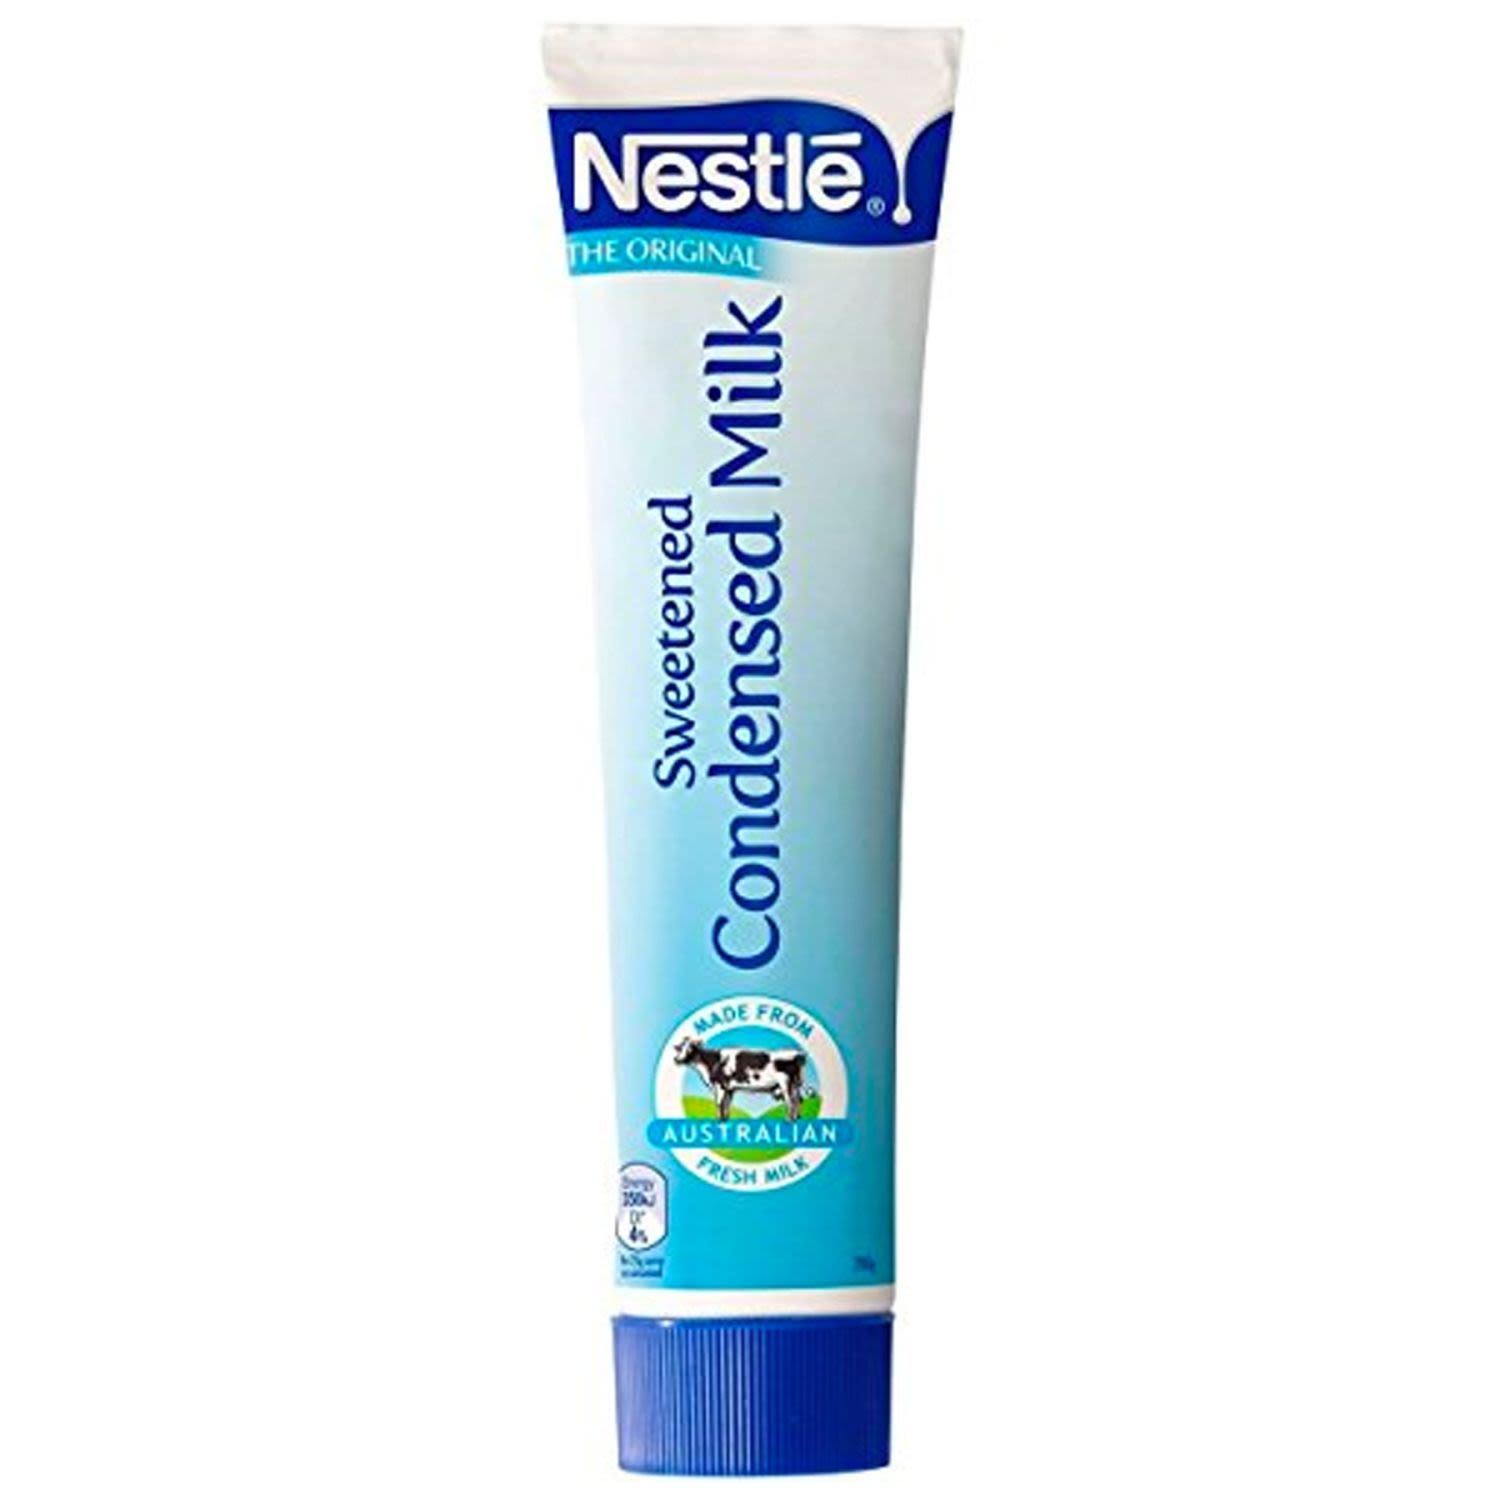 Nestlé Sweetened Condensed Milk Tube, 200 Gram